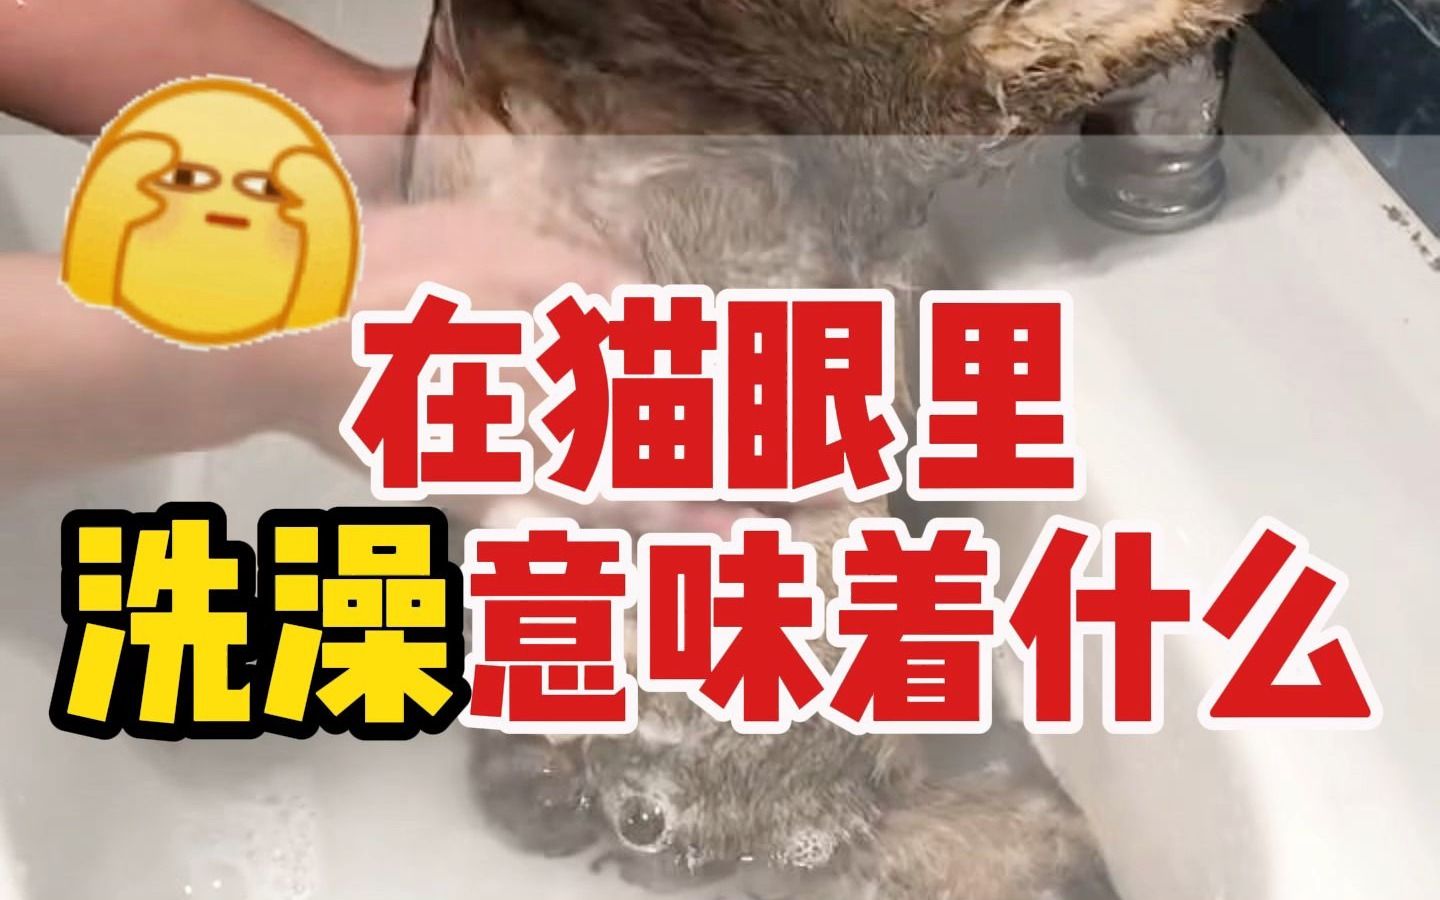 在猫眼里，洗澡意味着什么？